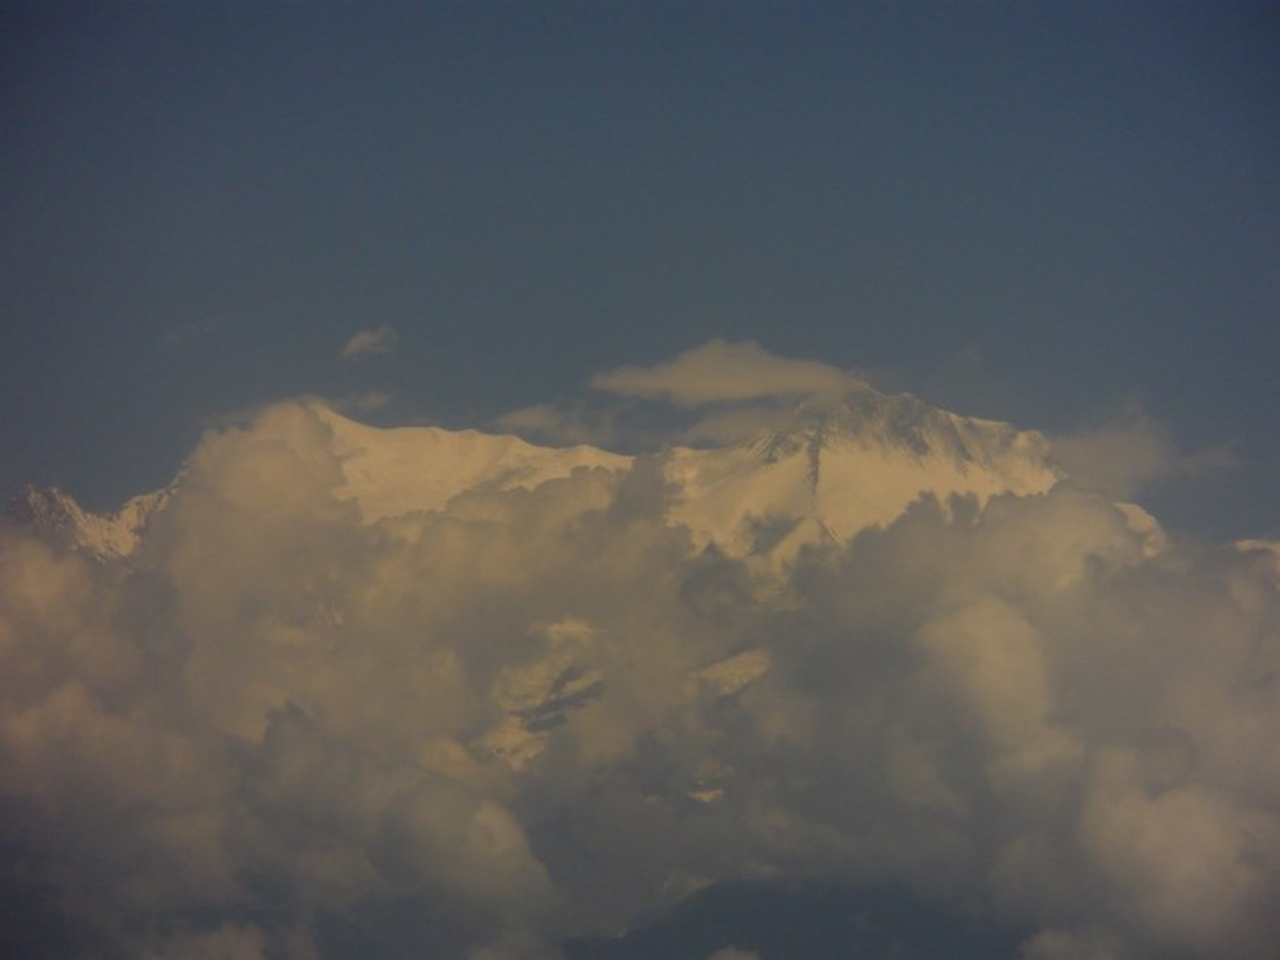 자연의 위대한 창조물인 히말랴아 산군, 비행기 창문 옆으로 보이다. 8,000m의 높이를 실감한다.  